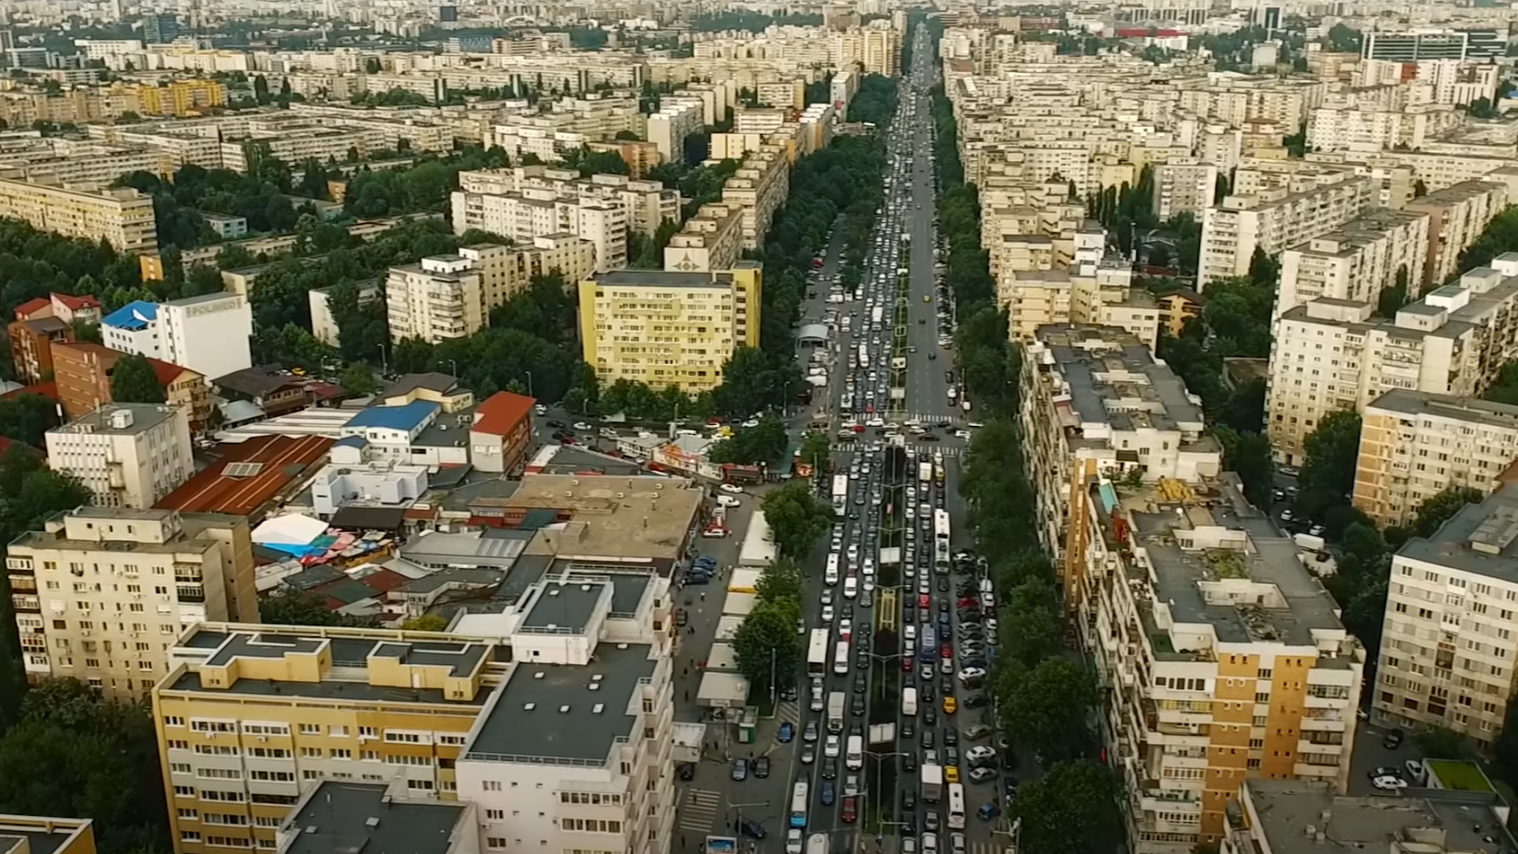 București oraşul se sufocă de construcţii trafic şi lipsa de verdeaţă